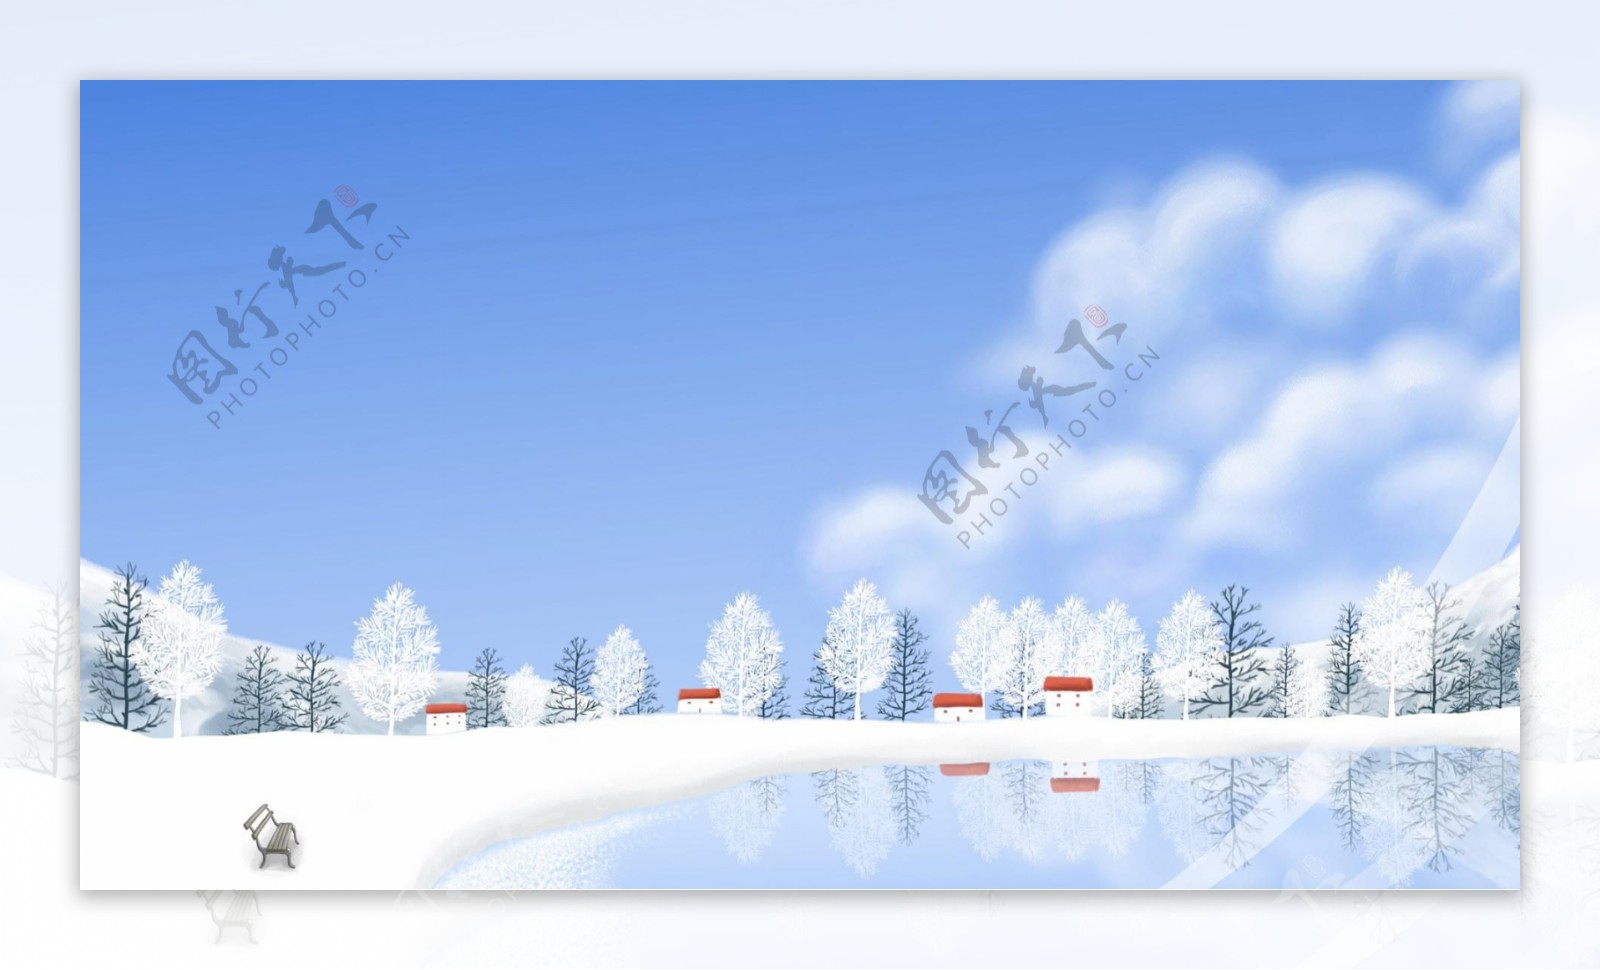 卡通雪景背景图片